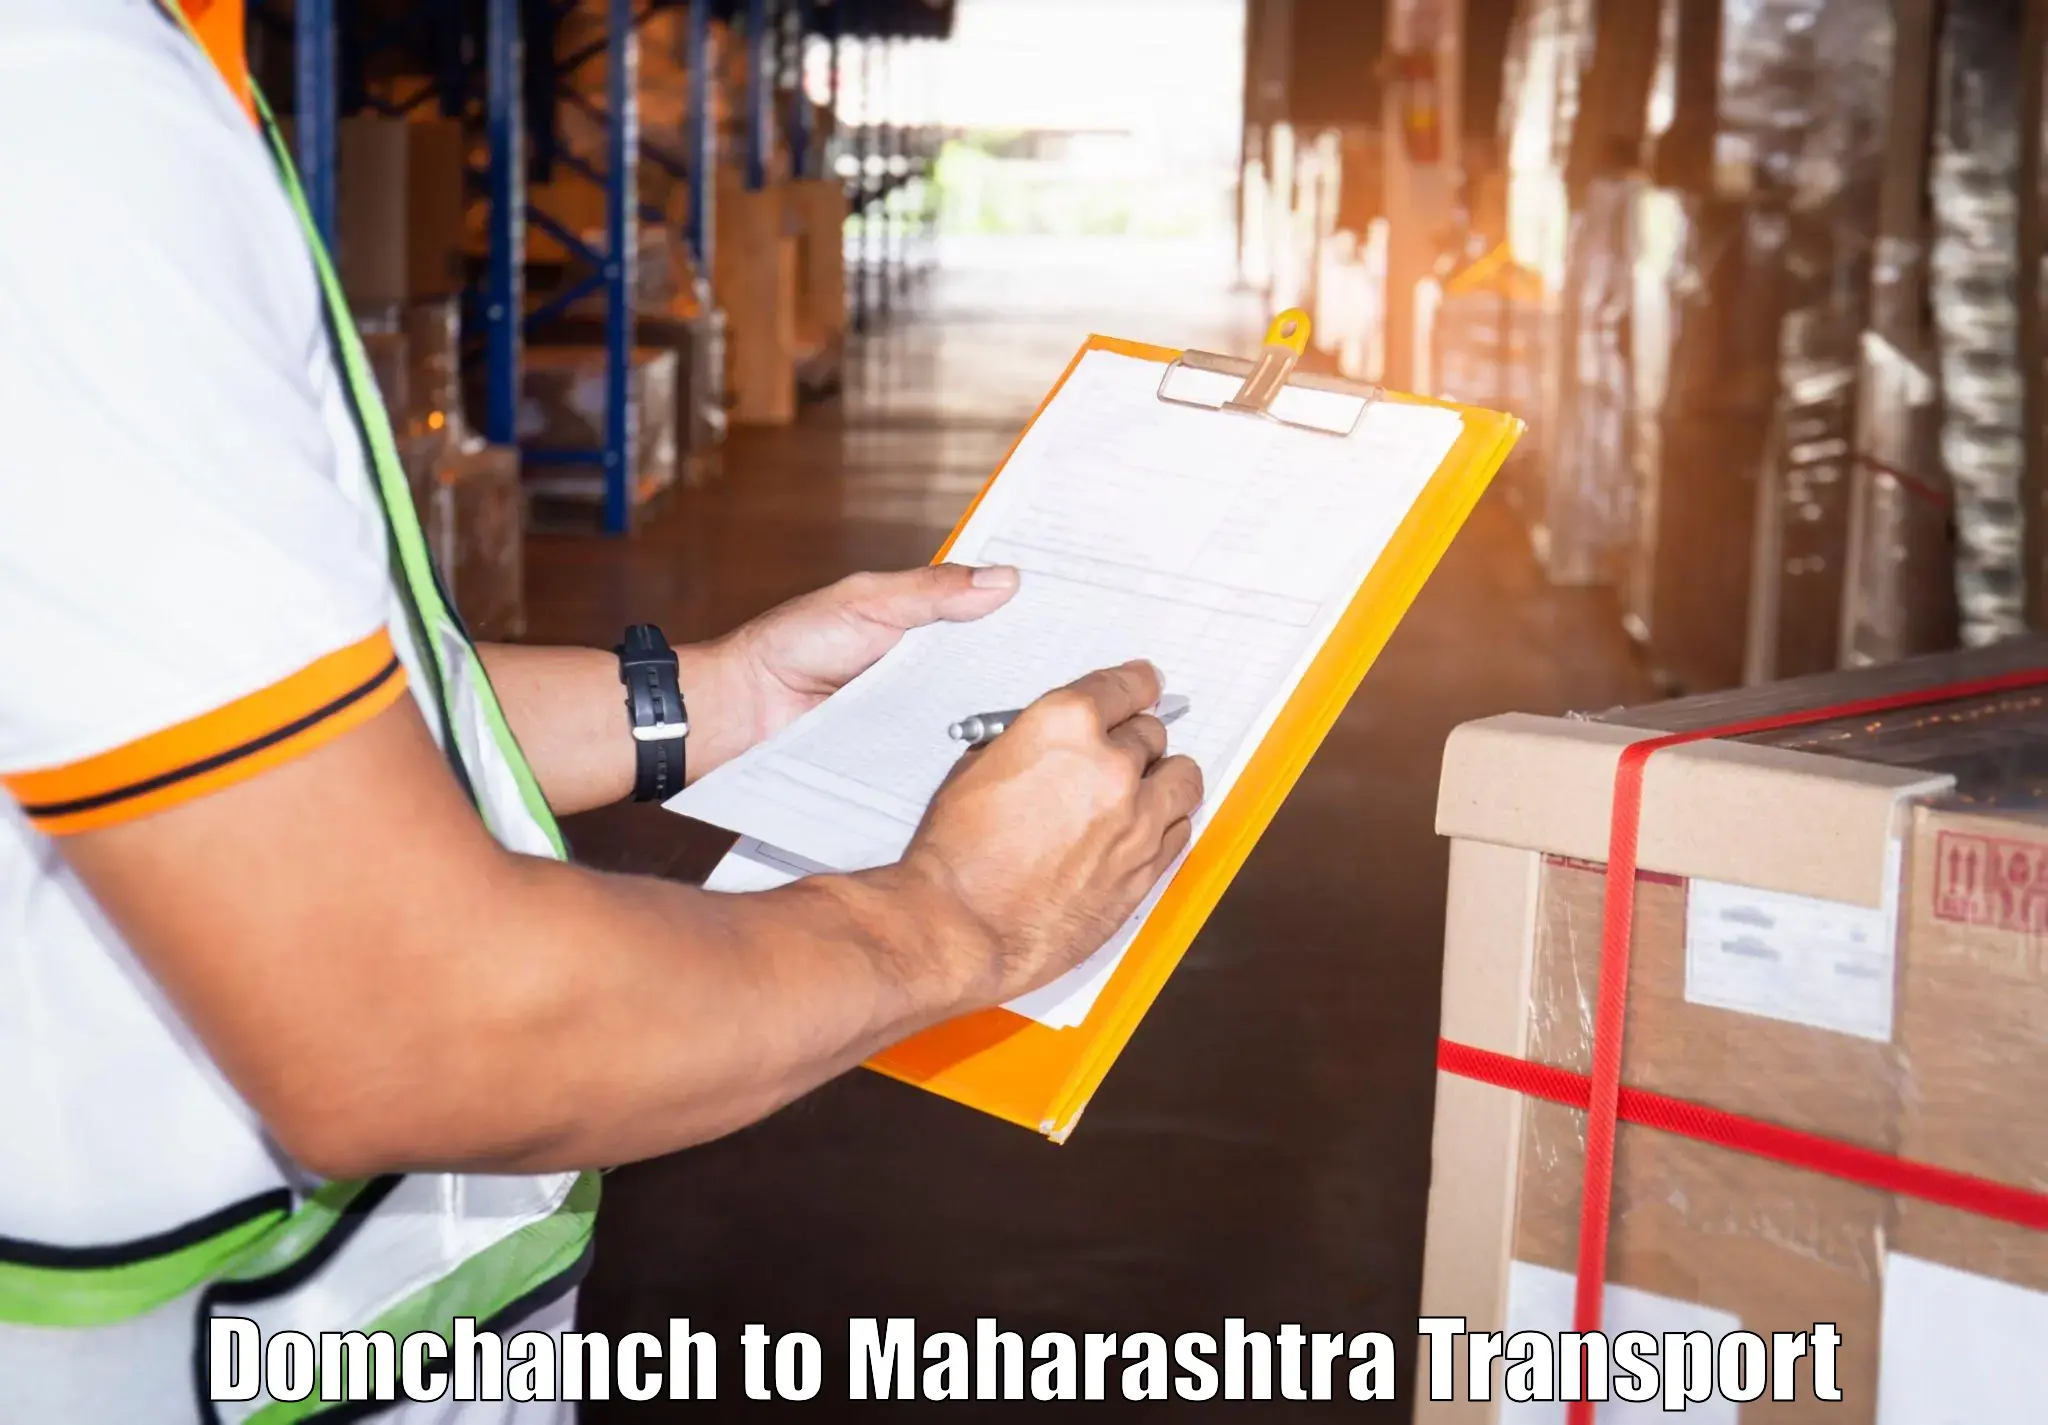 Cargo transportation services Domchanch to Sindhudurg